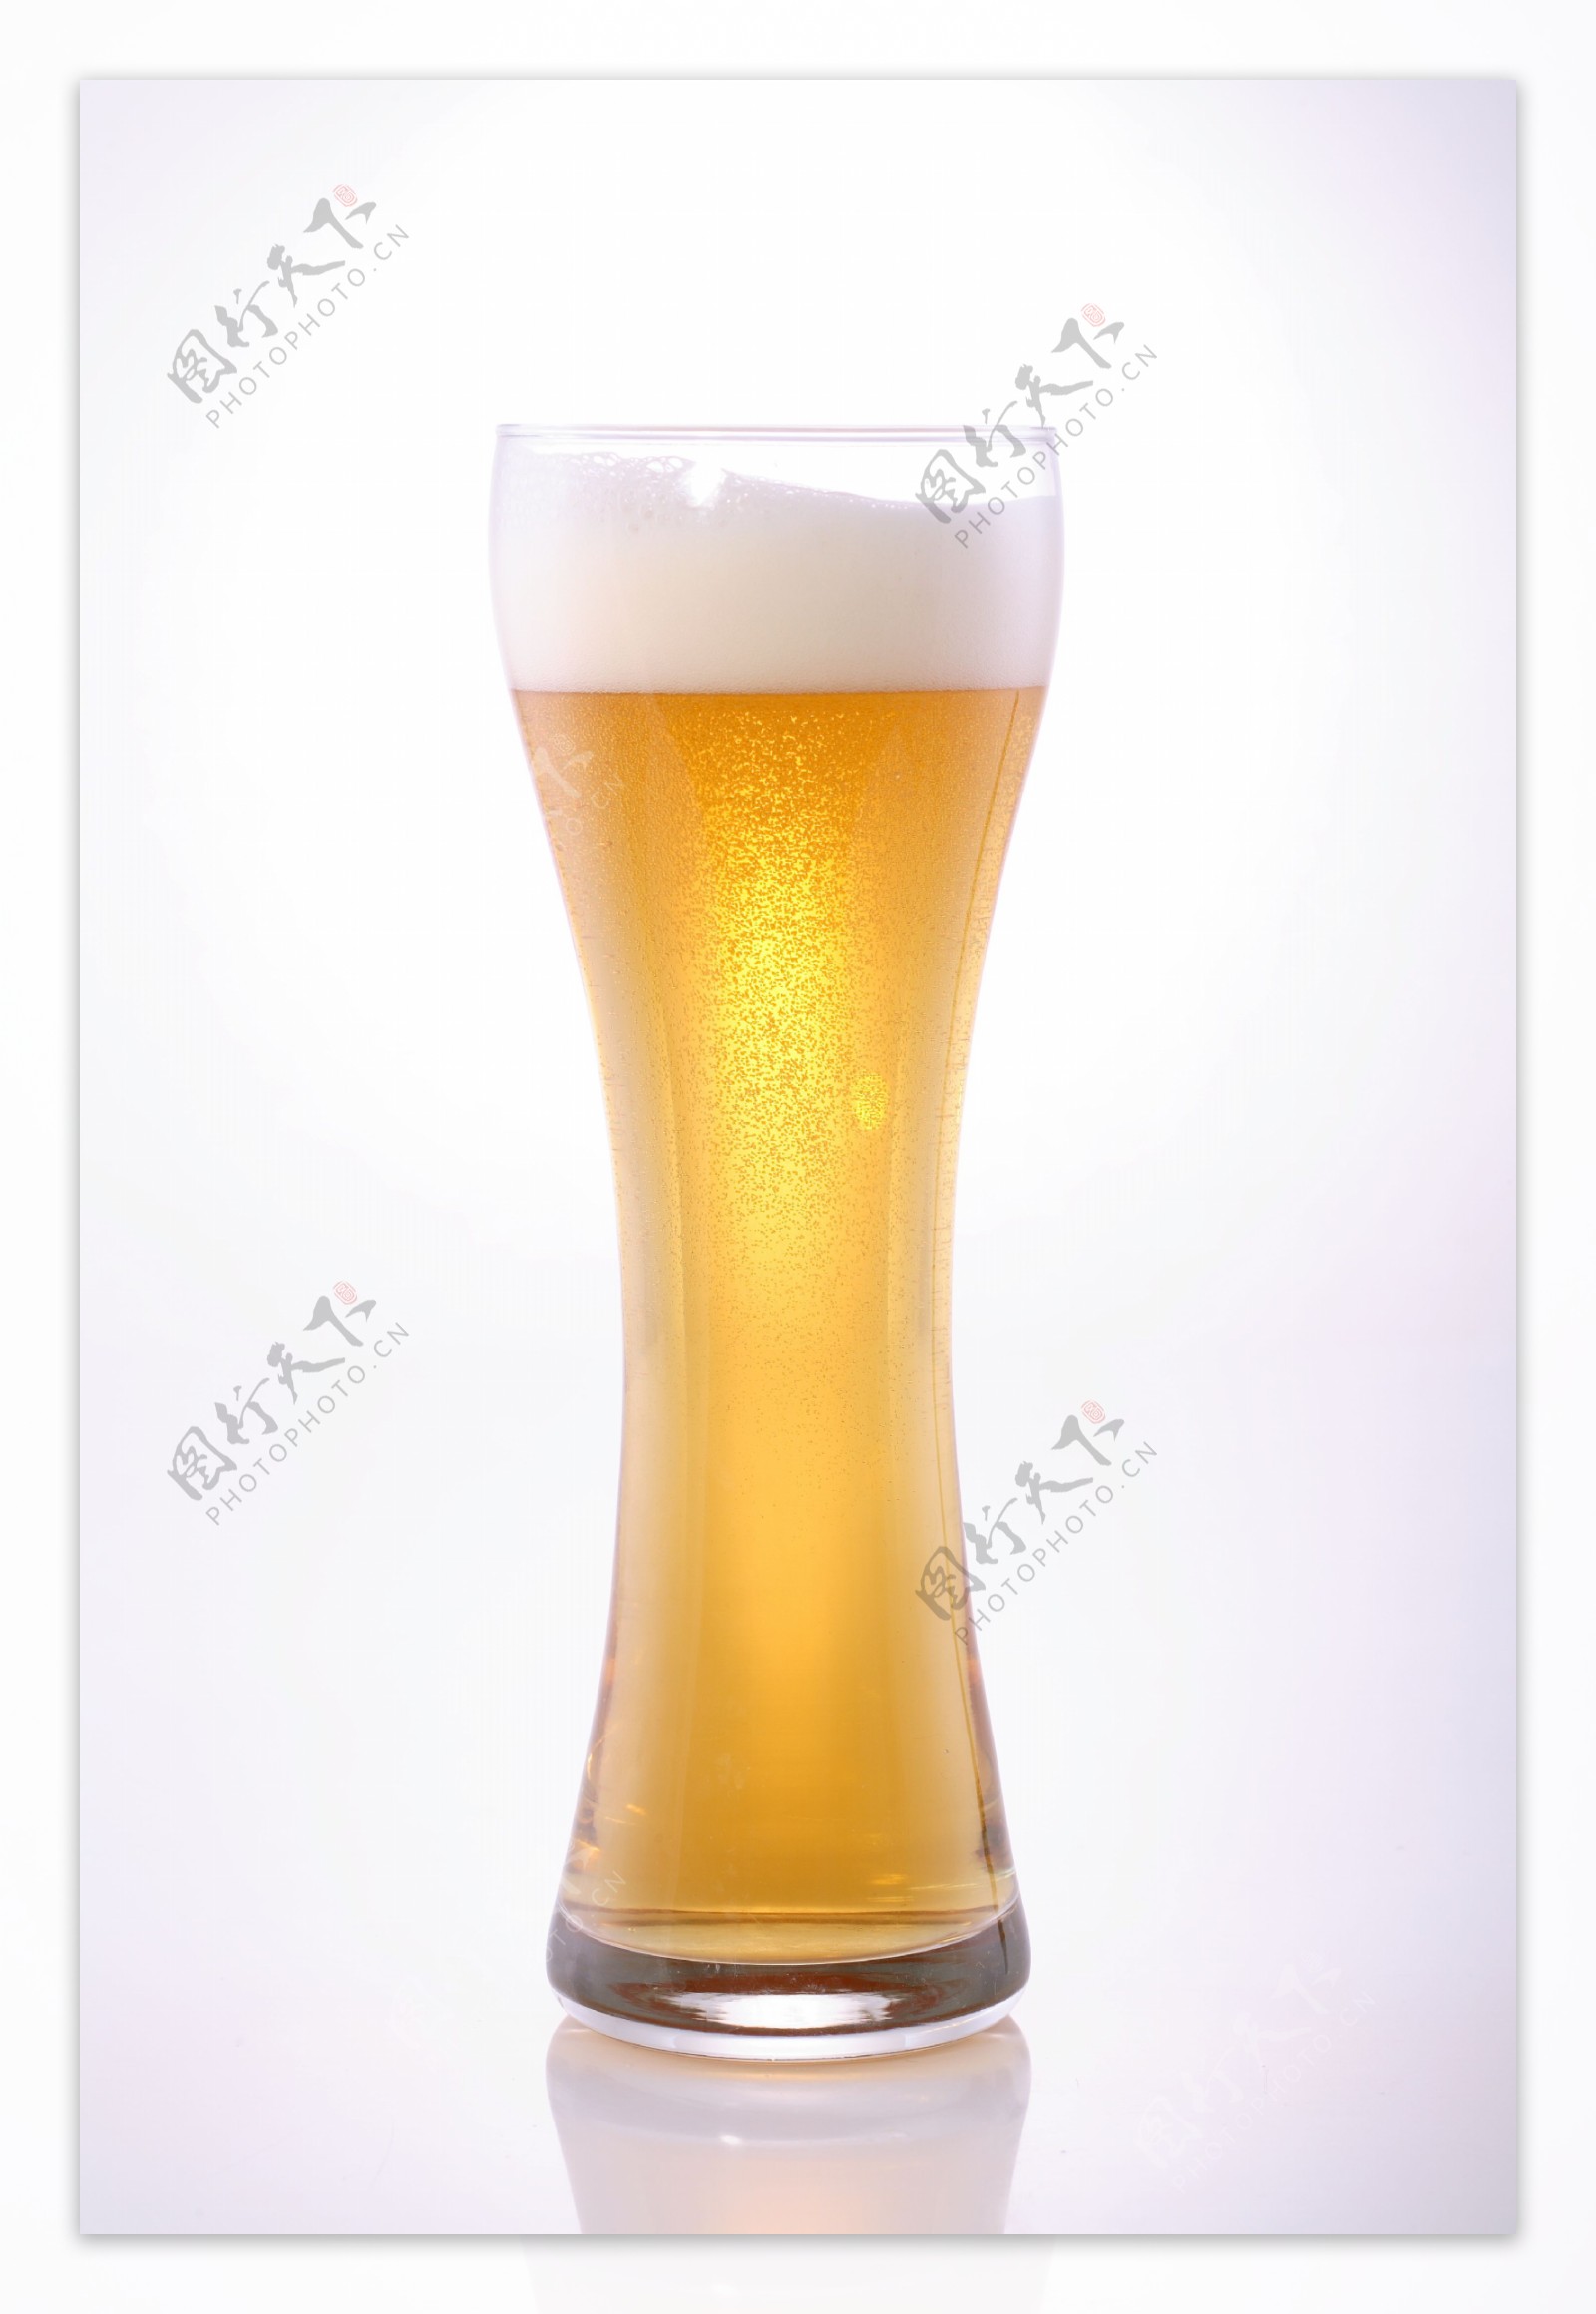 装满啤酒的杯子图片